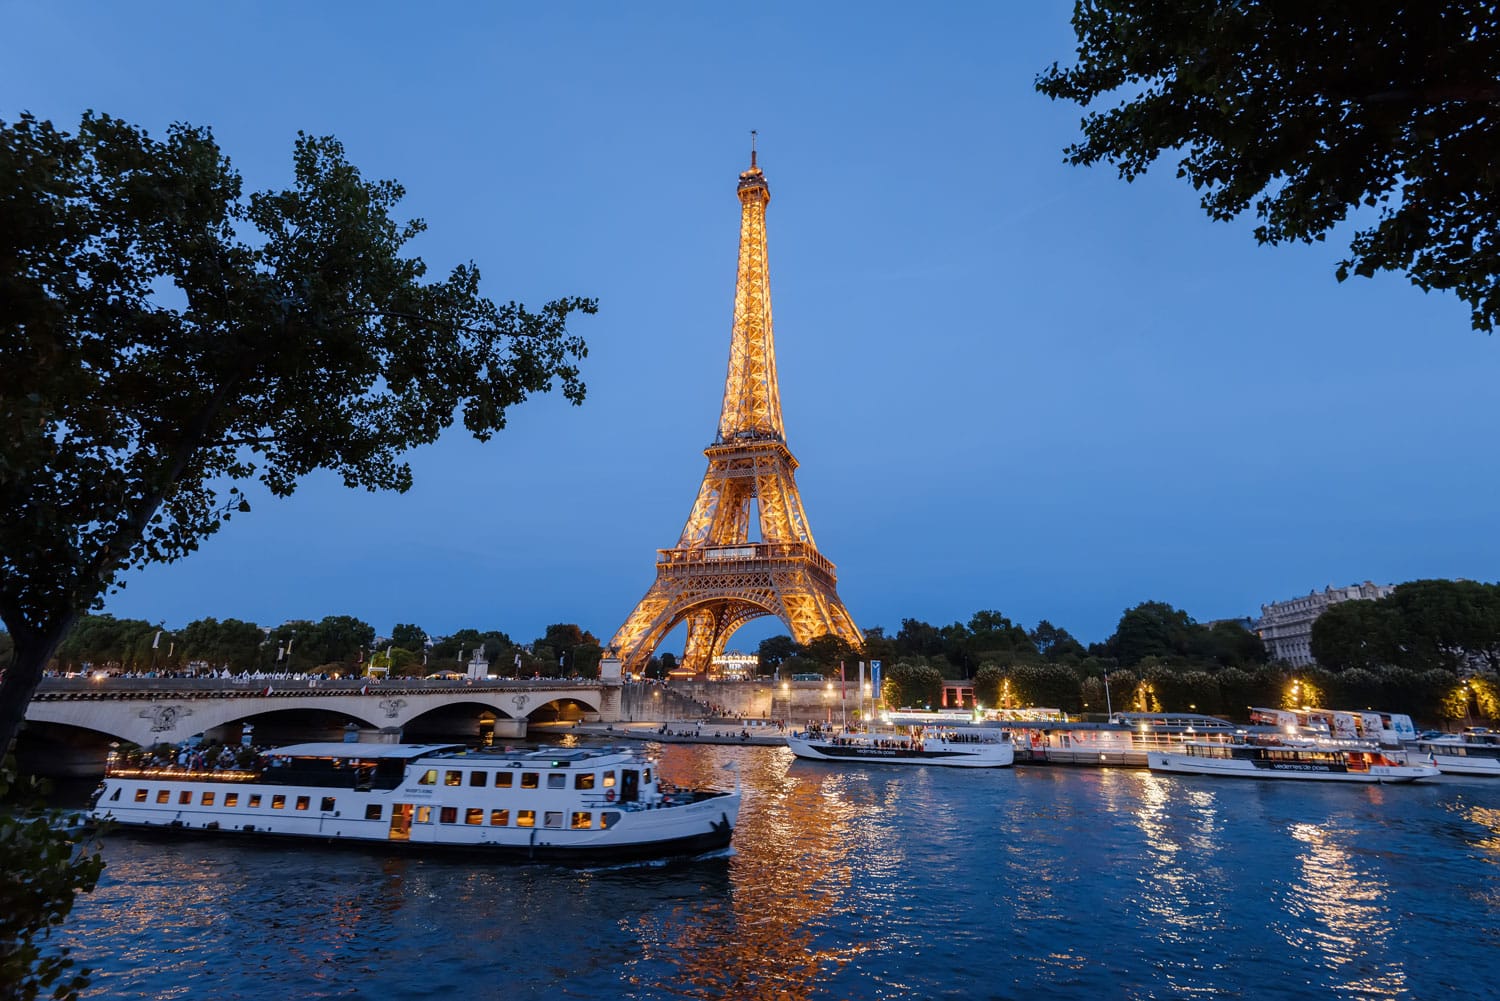 Πύργος του Άιφελ, κρουαζιερόπλοια και γέφυρα στον ποταμό Σηκουάνα τη νύχτα στο Παρίσι, Γαλλία